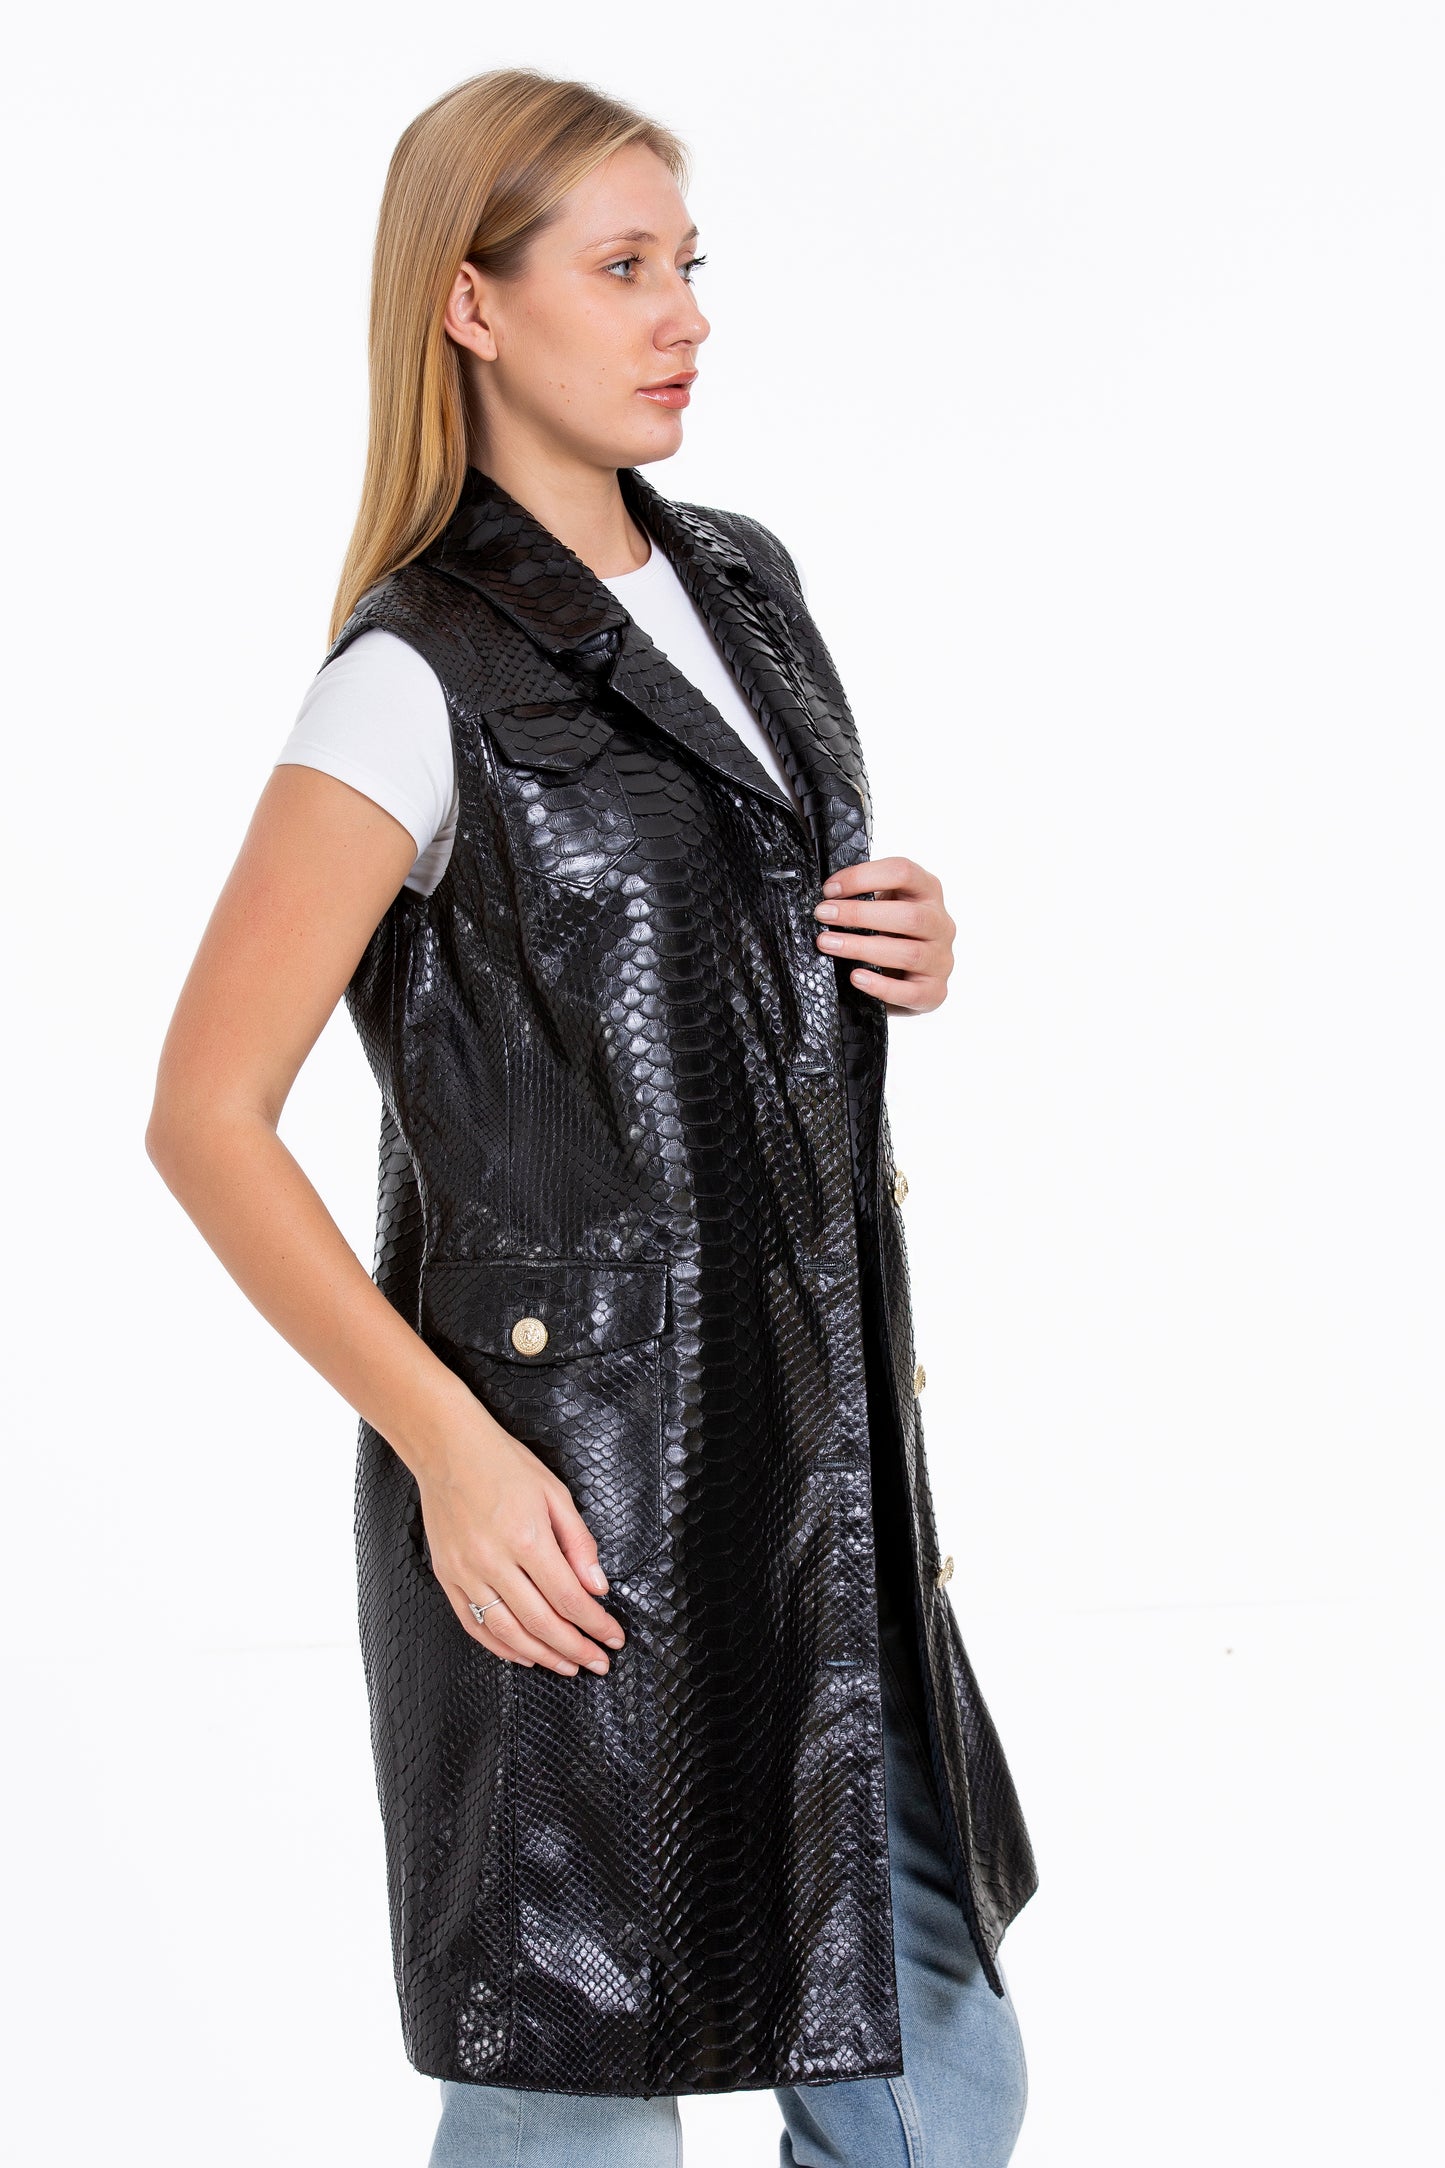 The Medellin Pythn Skin Leather Black Zip-Up Vest